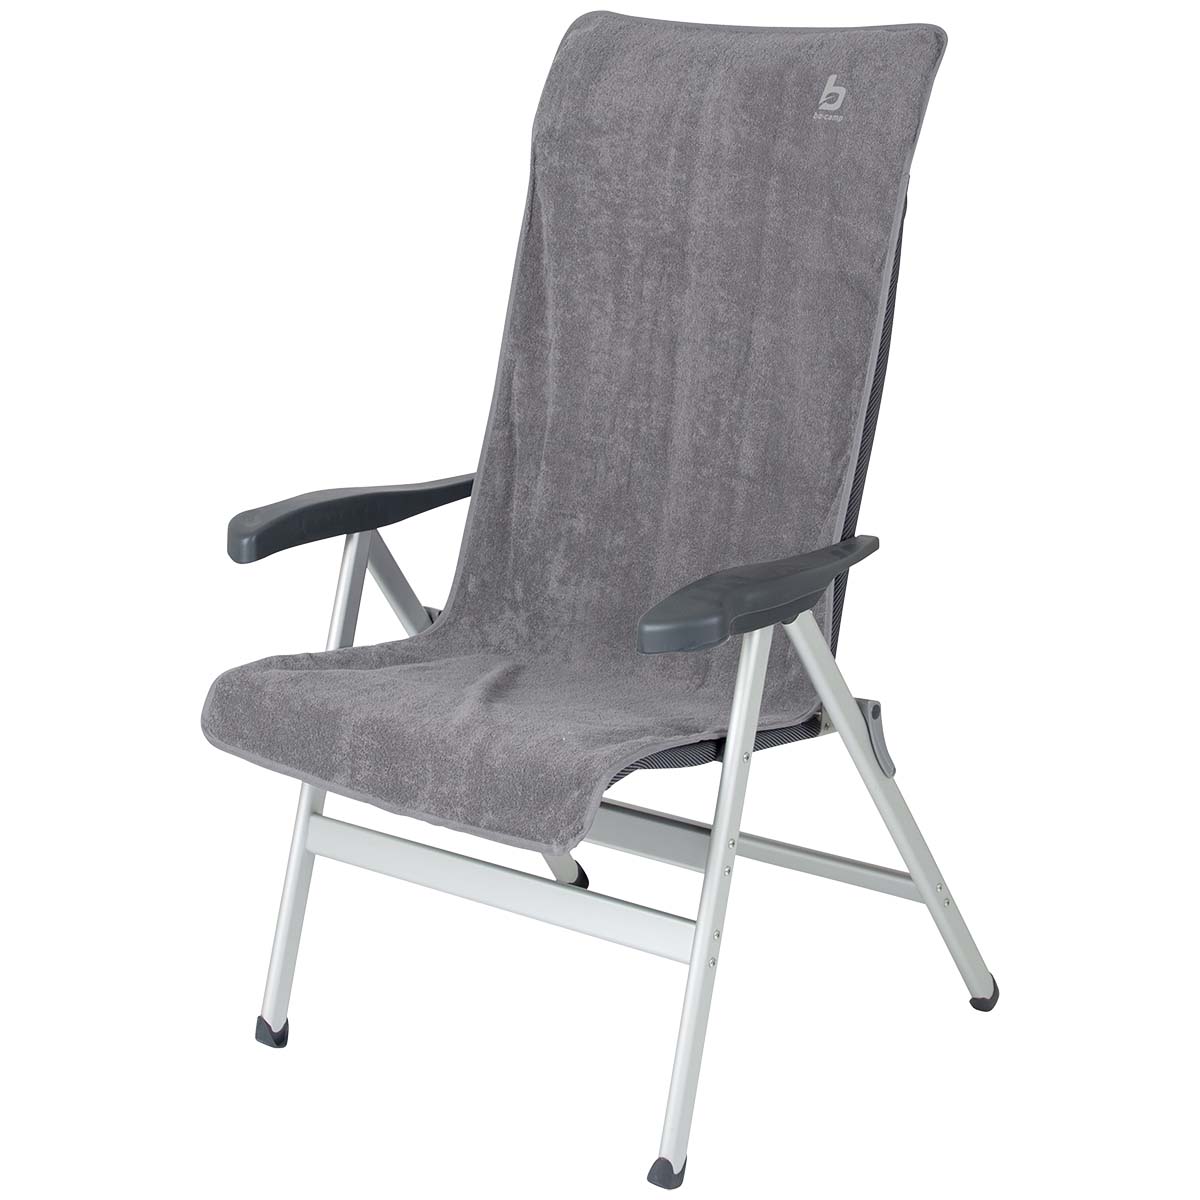 1849291 Een universele stoelhoes voor (kampeer)stoelen. Zorgt voor optimaal zitcomfort en biedt bescherming aan de stoel. De stoelhoes is universeel toepasbaar.